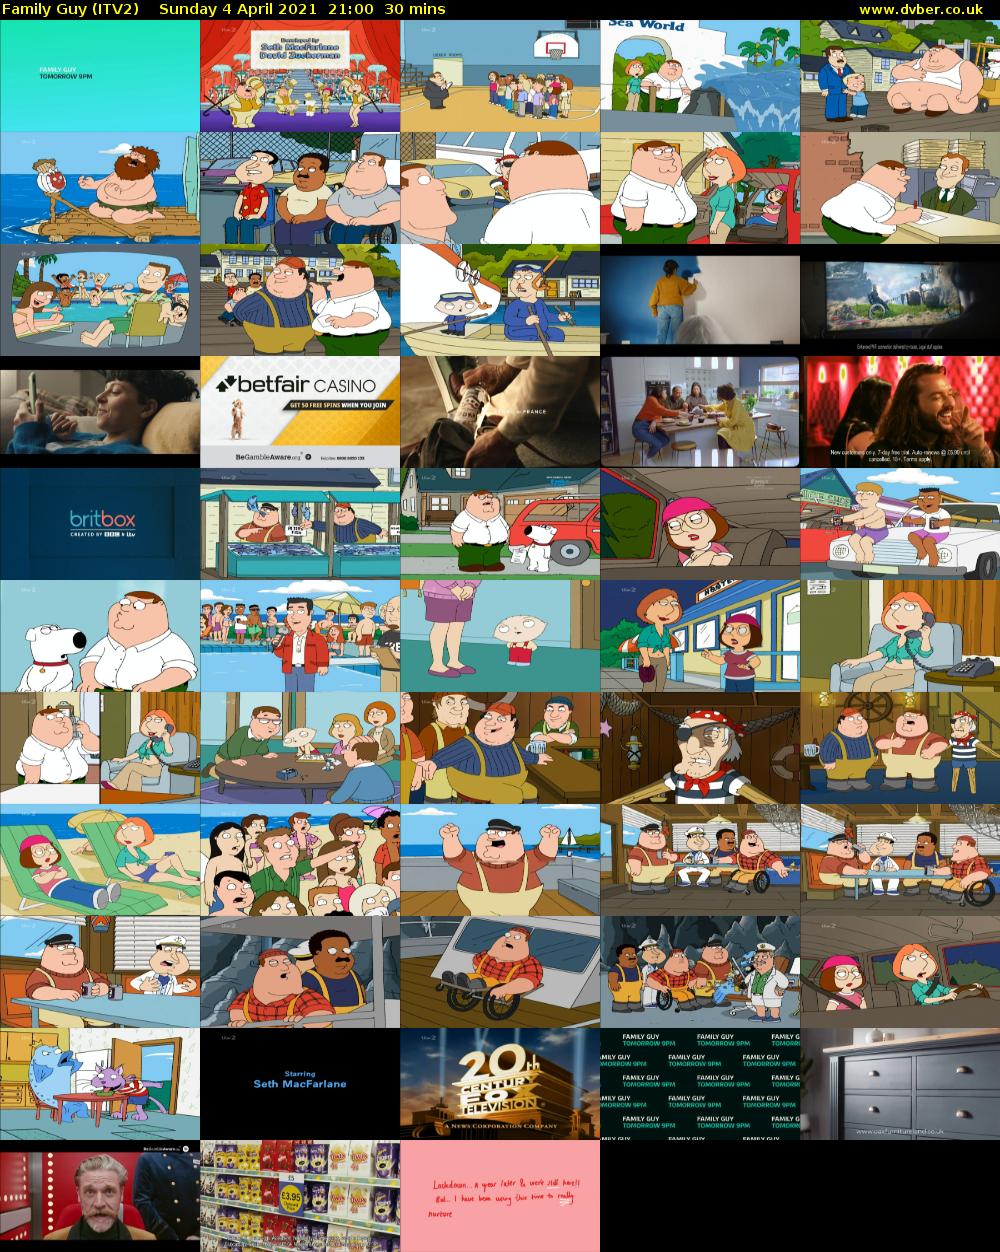 Family Guy (ITV2) Sunday 4 April 2021 21:00 - 21:30